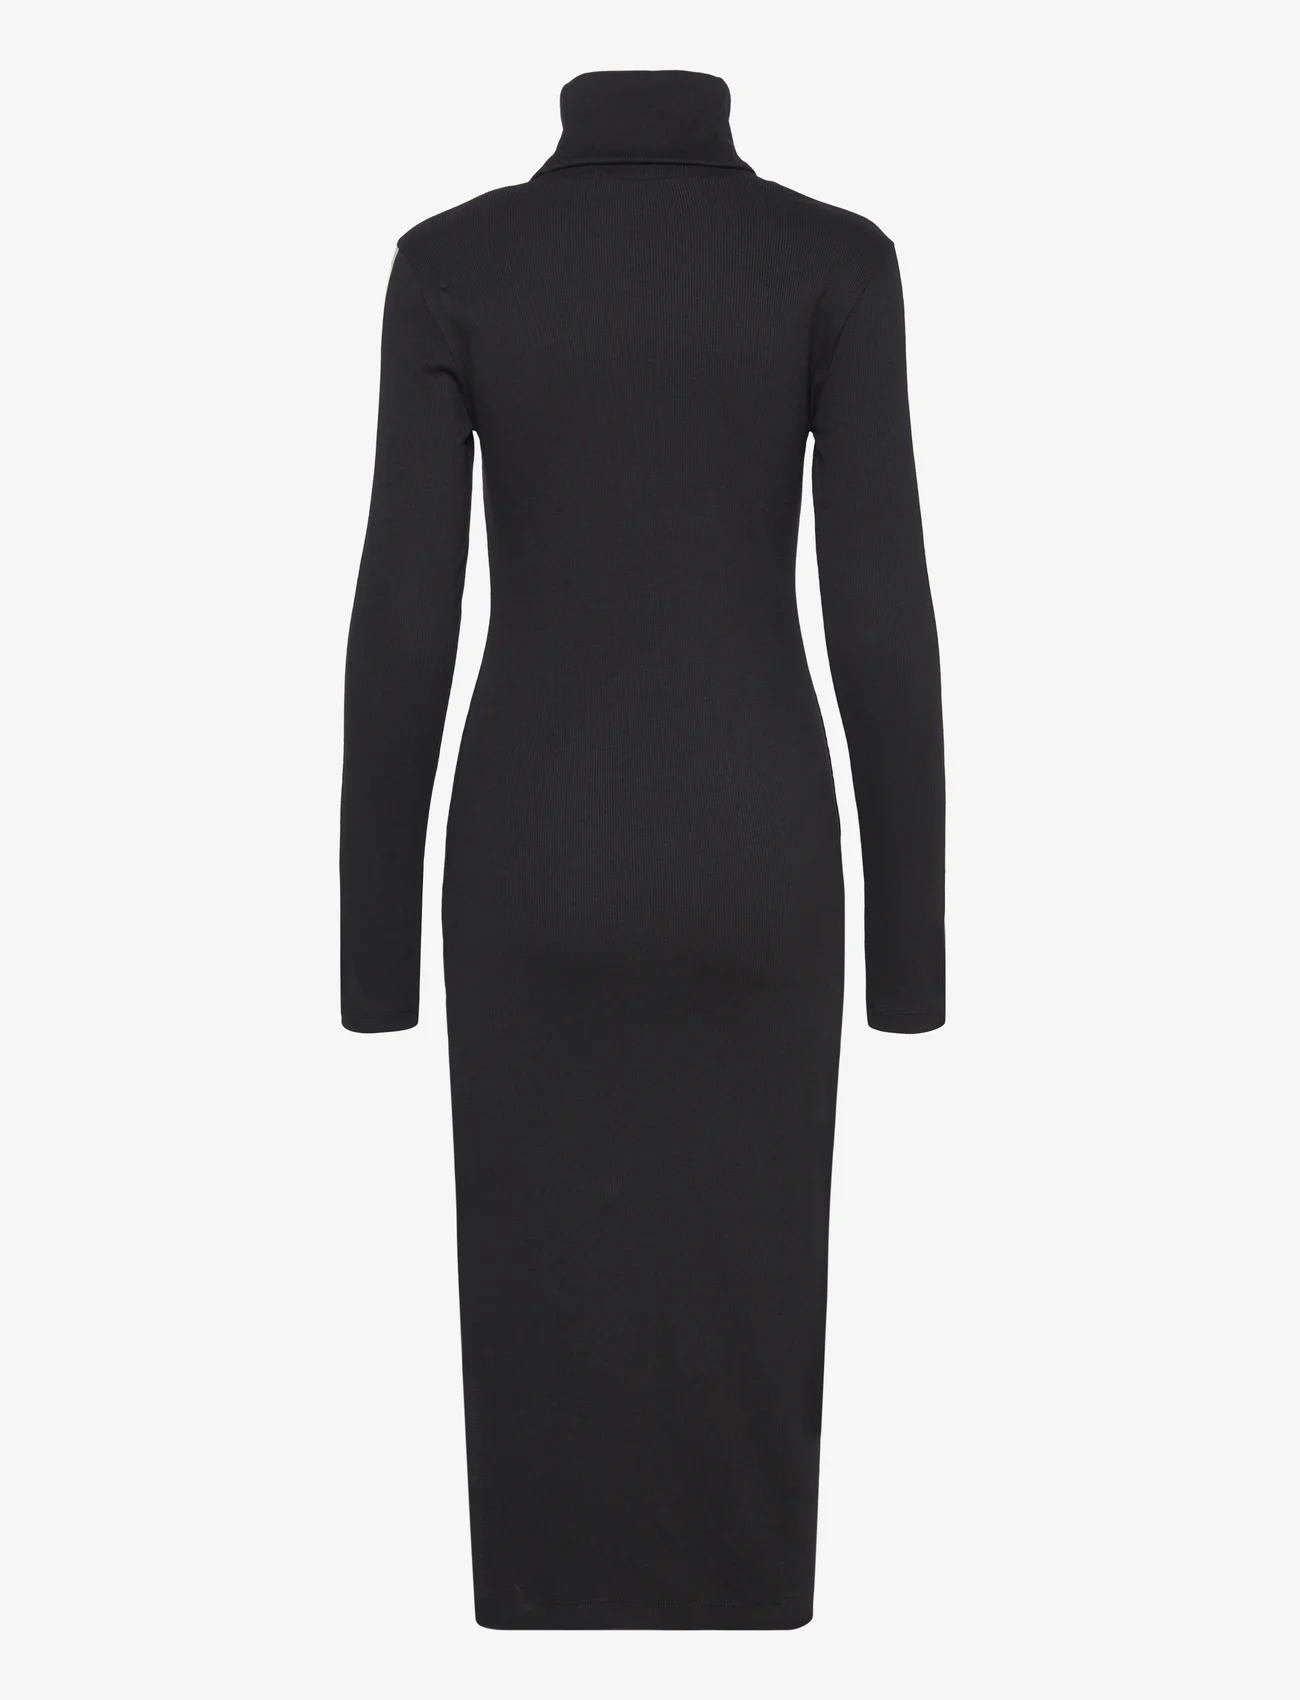 Calvin Klein Jeans - LOGO ELASTIC RIB LONG DRESS - stramme kjoler - ck black - 1